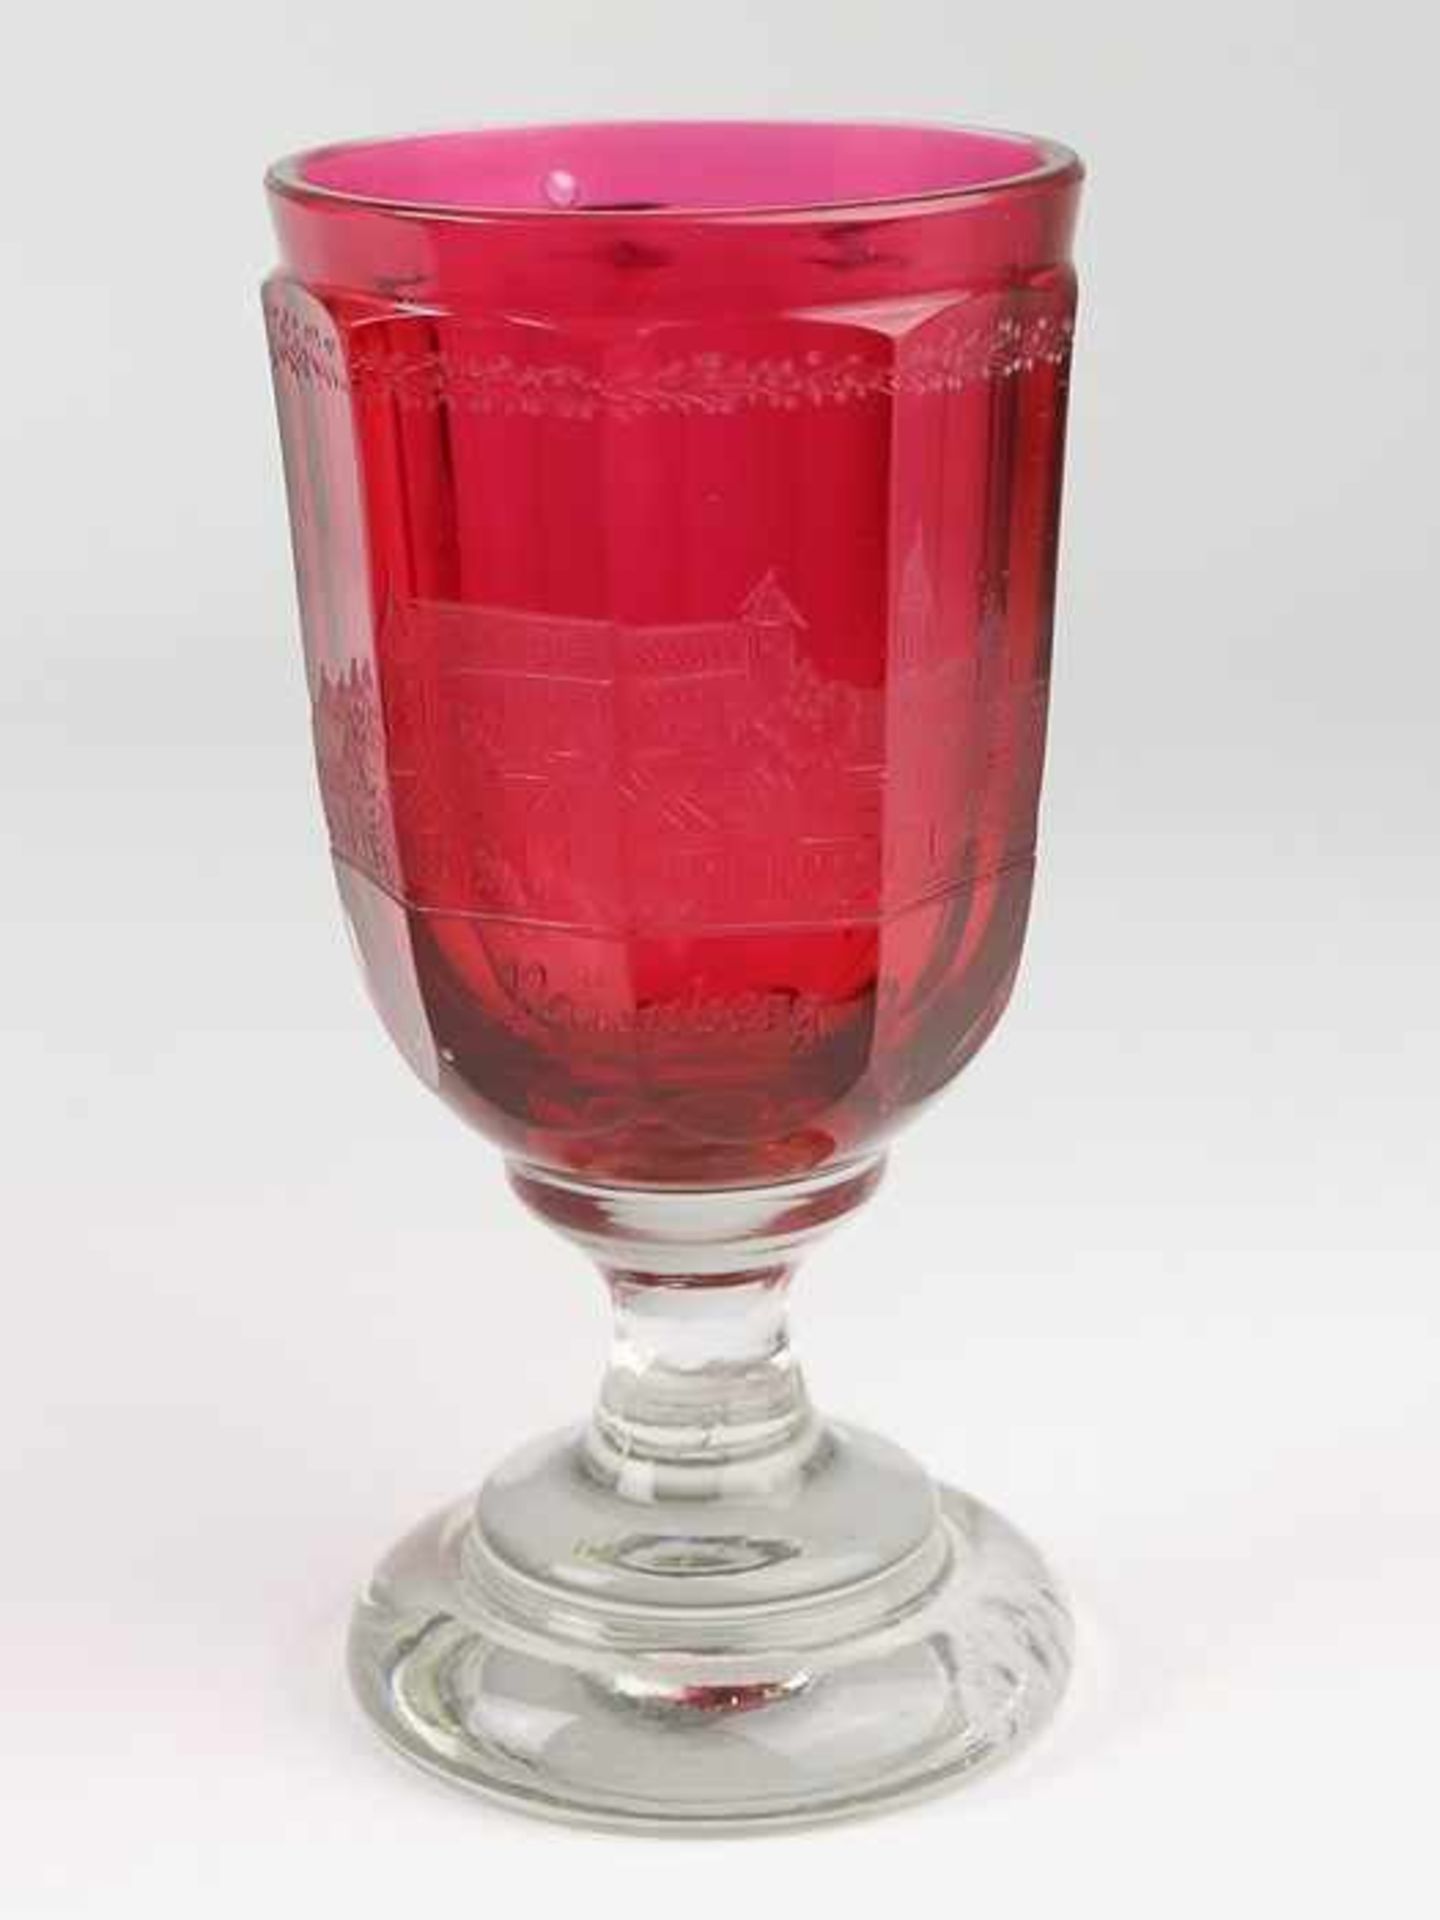 Andenkenbecher19. Jh., farbloses u. rubinfarbenes Glas, runder, zweifach gewulsteter Stand, konkaver - Bild 2 aus 8